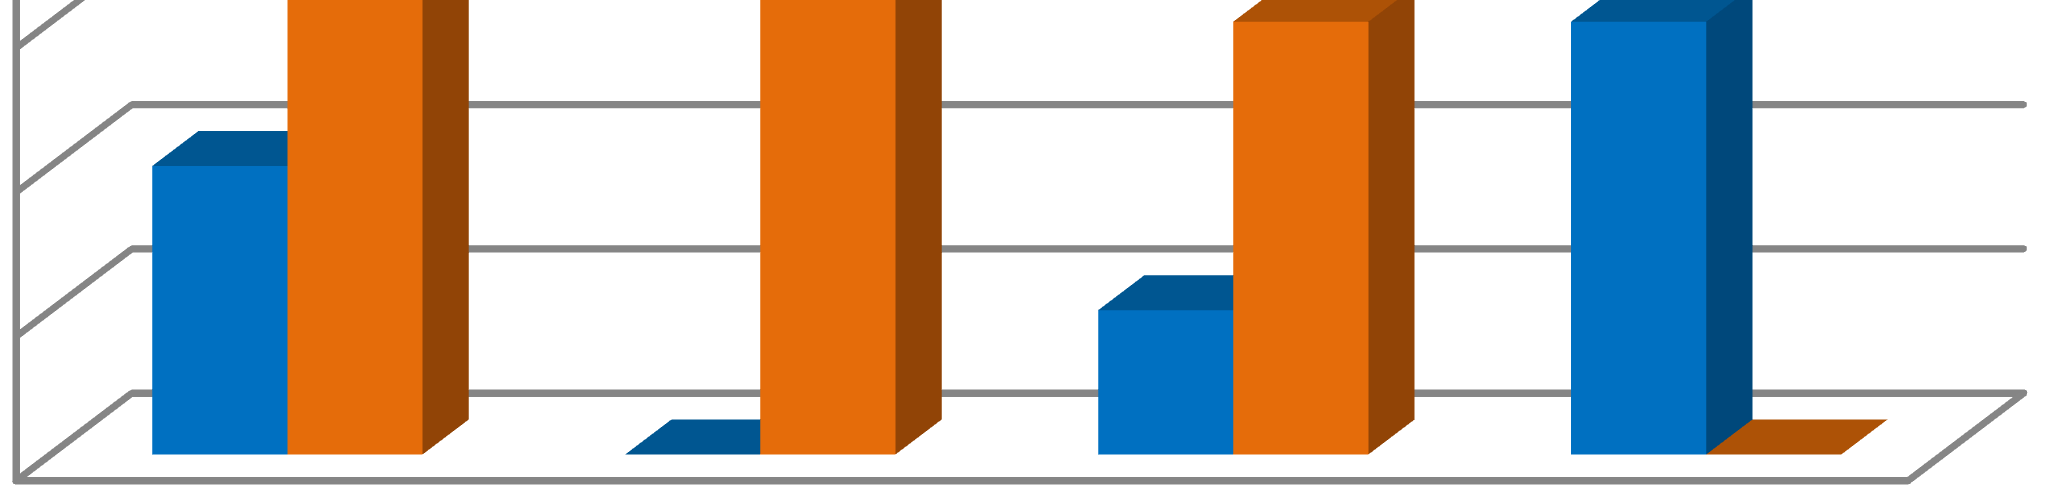 V grafu 2 lze vidět porovnání kolik bylo dotazováno firem a živnostníků v jednotlivých oborech podnikání.